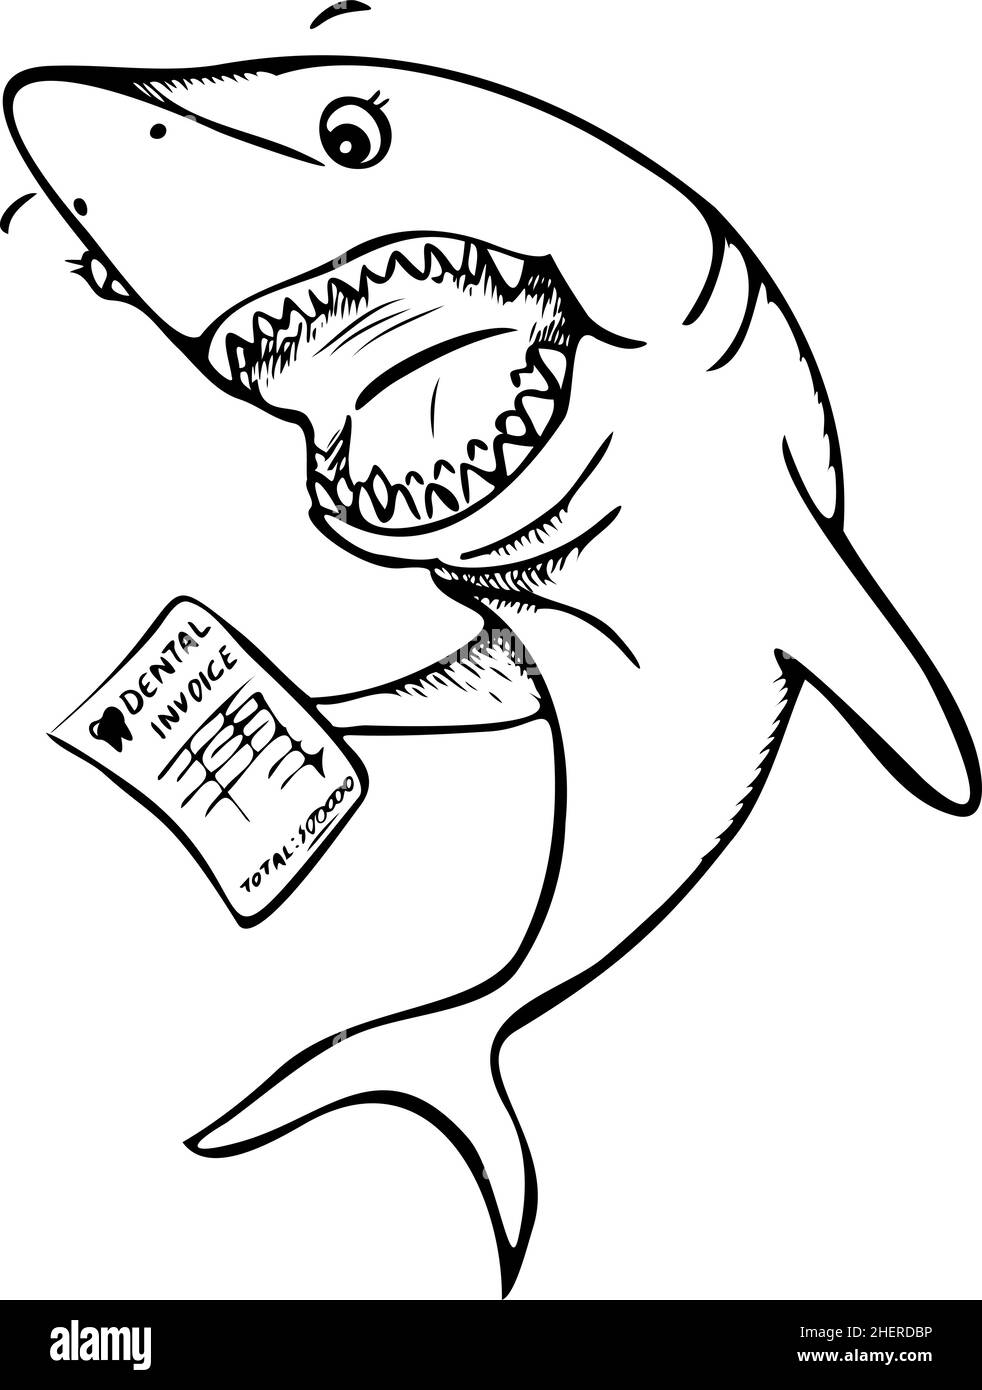 Illustration vectorielle d'un requin drôle avec facture dentaire dans sa nageoire.Requin caricature noir et blanc étonnant. Illustration de Vecteur